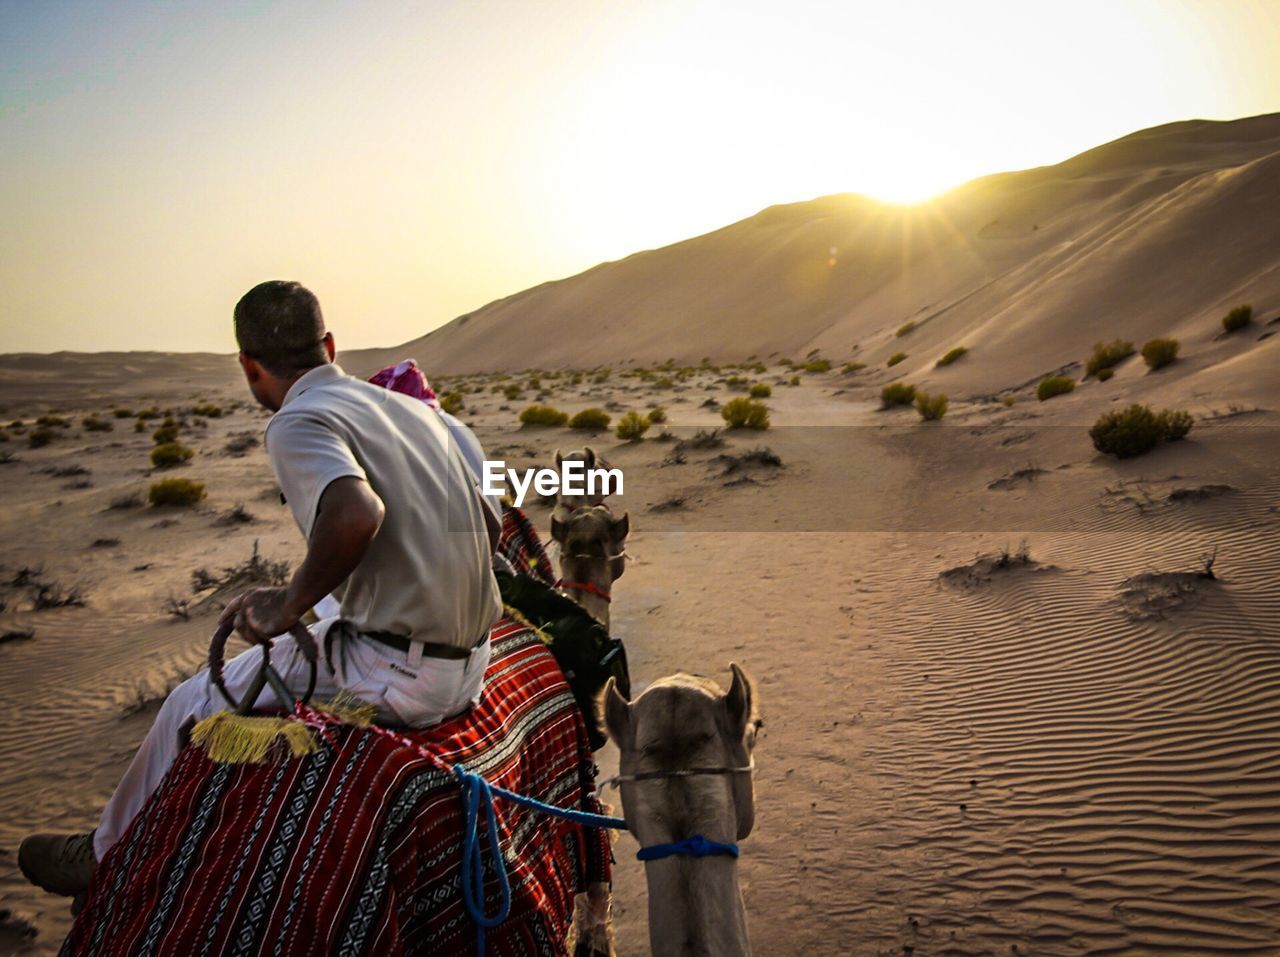 Man on camel in the desert